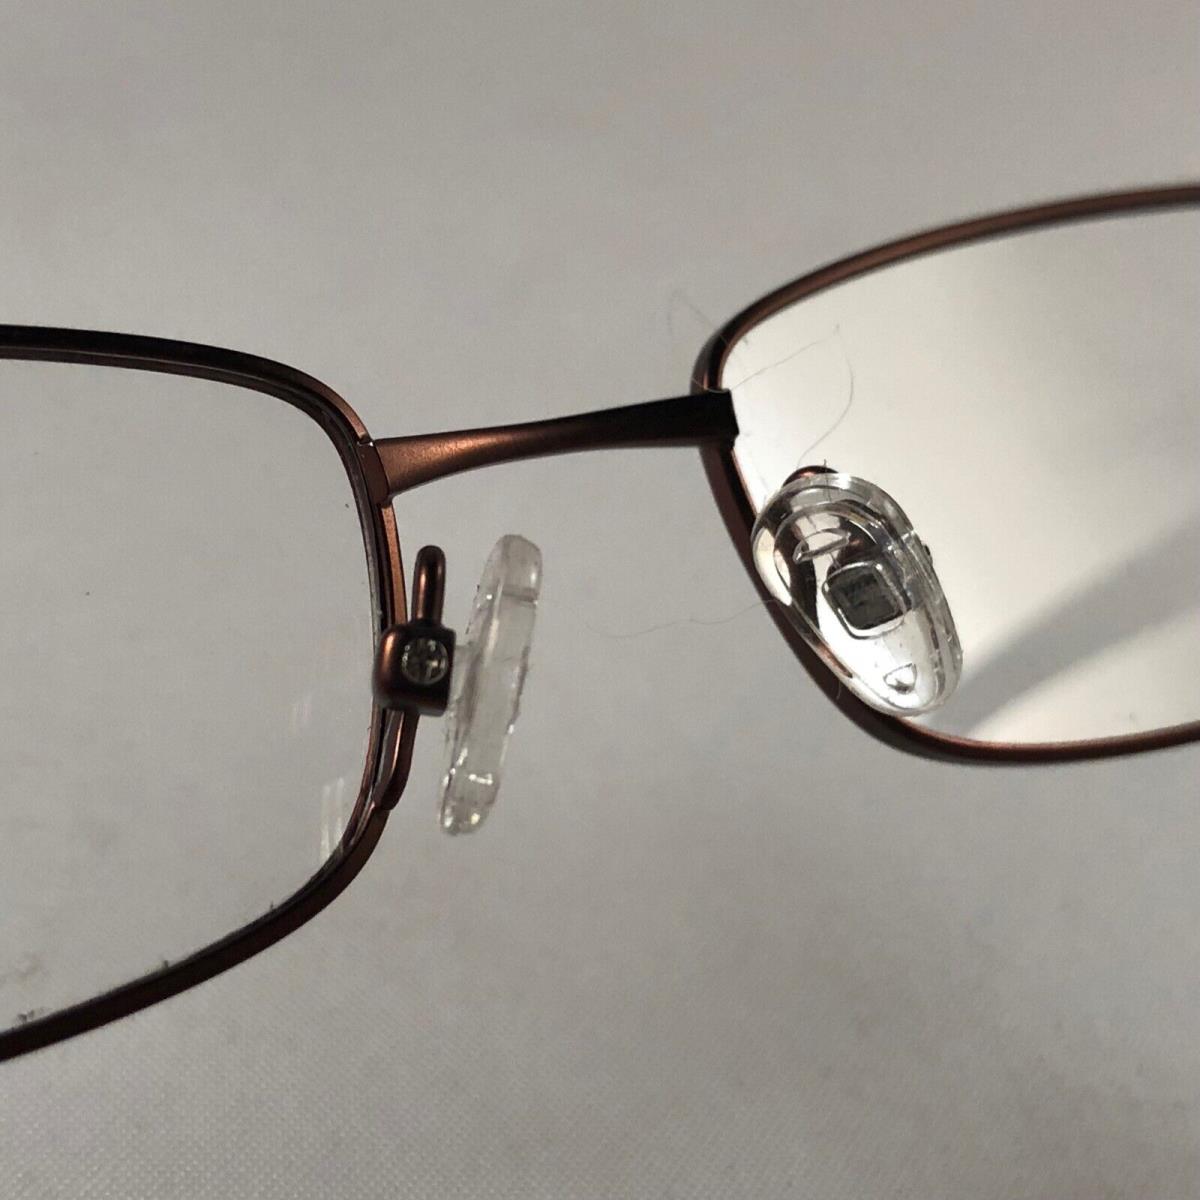 Steve Madden eyeglasses  - Brown , Copper Frame